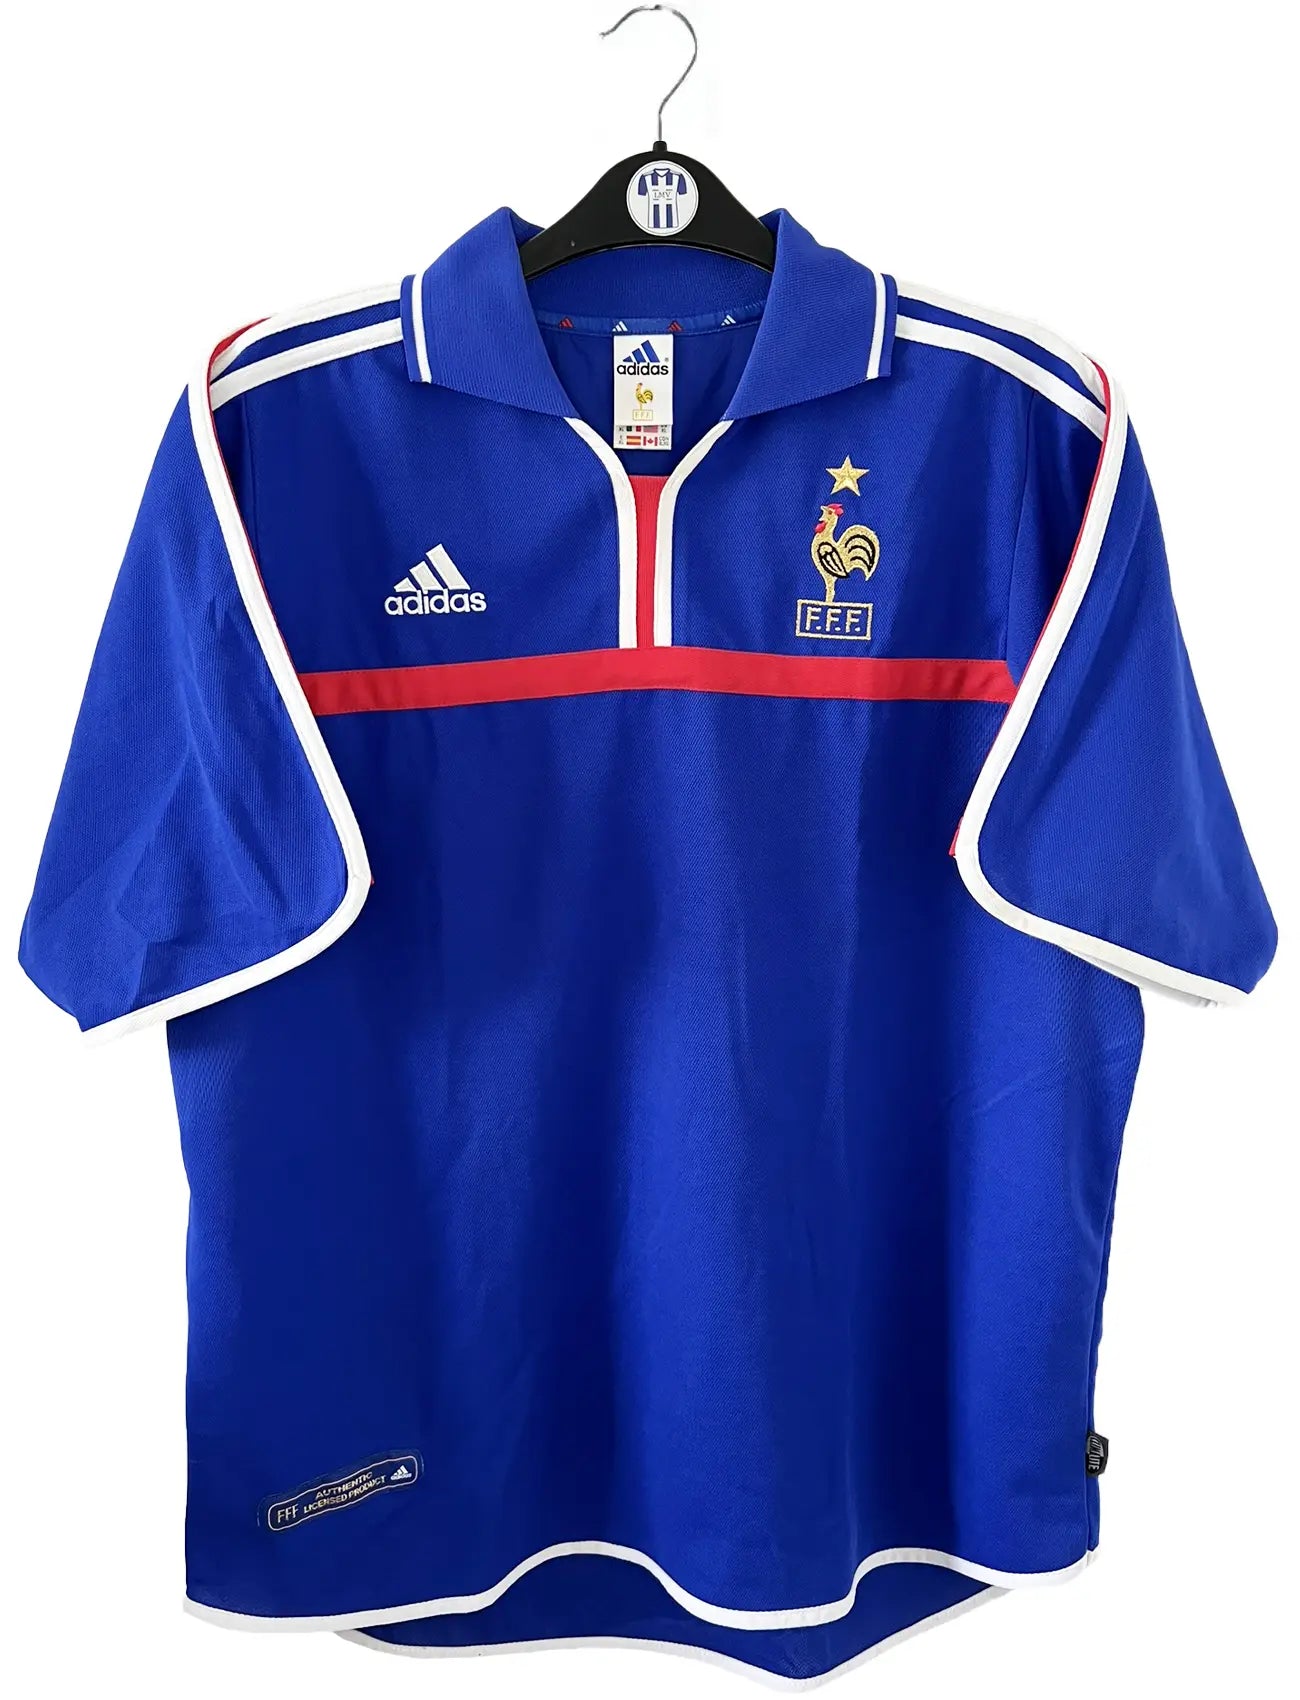 Maillot de foot vintage domicile de l'équipe de france 2000. Le maillot est de couleur bleu blanc et rouge. On peut retrouver l'équipementier adidas. Il s'agit d'un maillot authentique comportant les numéros 647194.